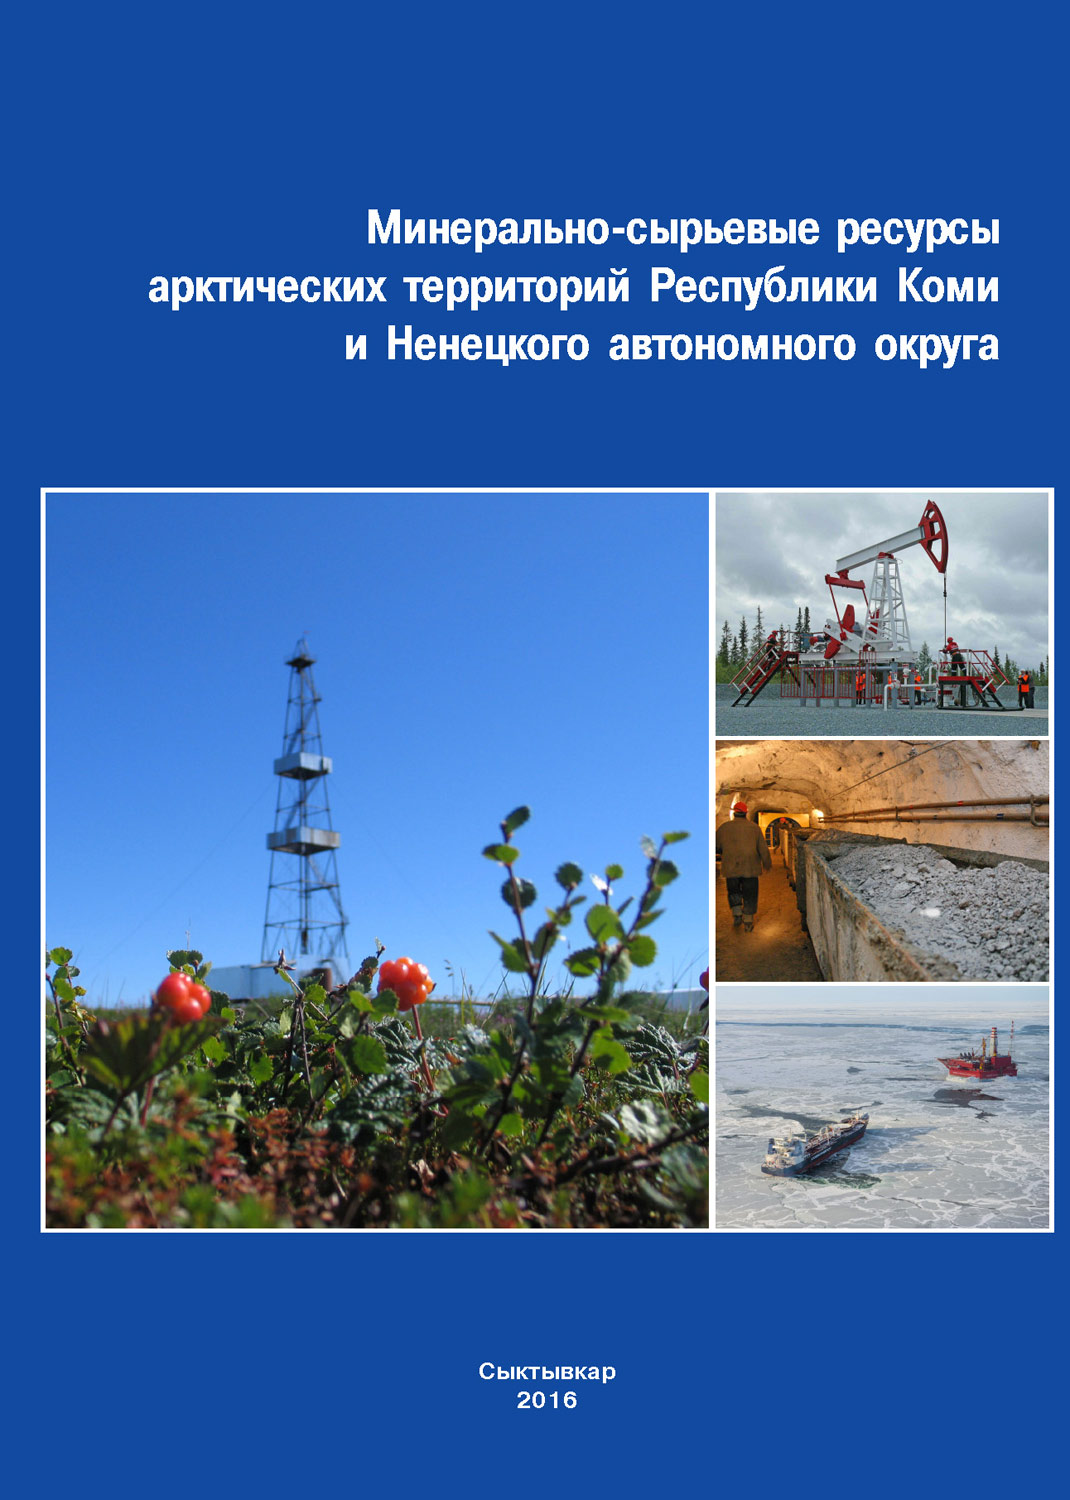 Минерально-сырьевые ресурсы арктических территорий Республики Коми и Ненецкого автономного округа